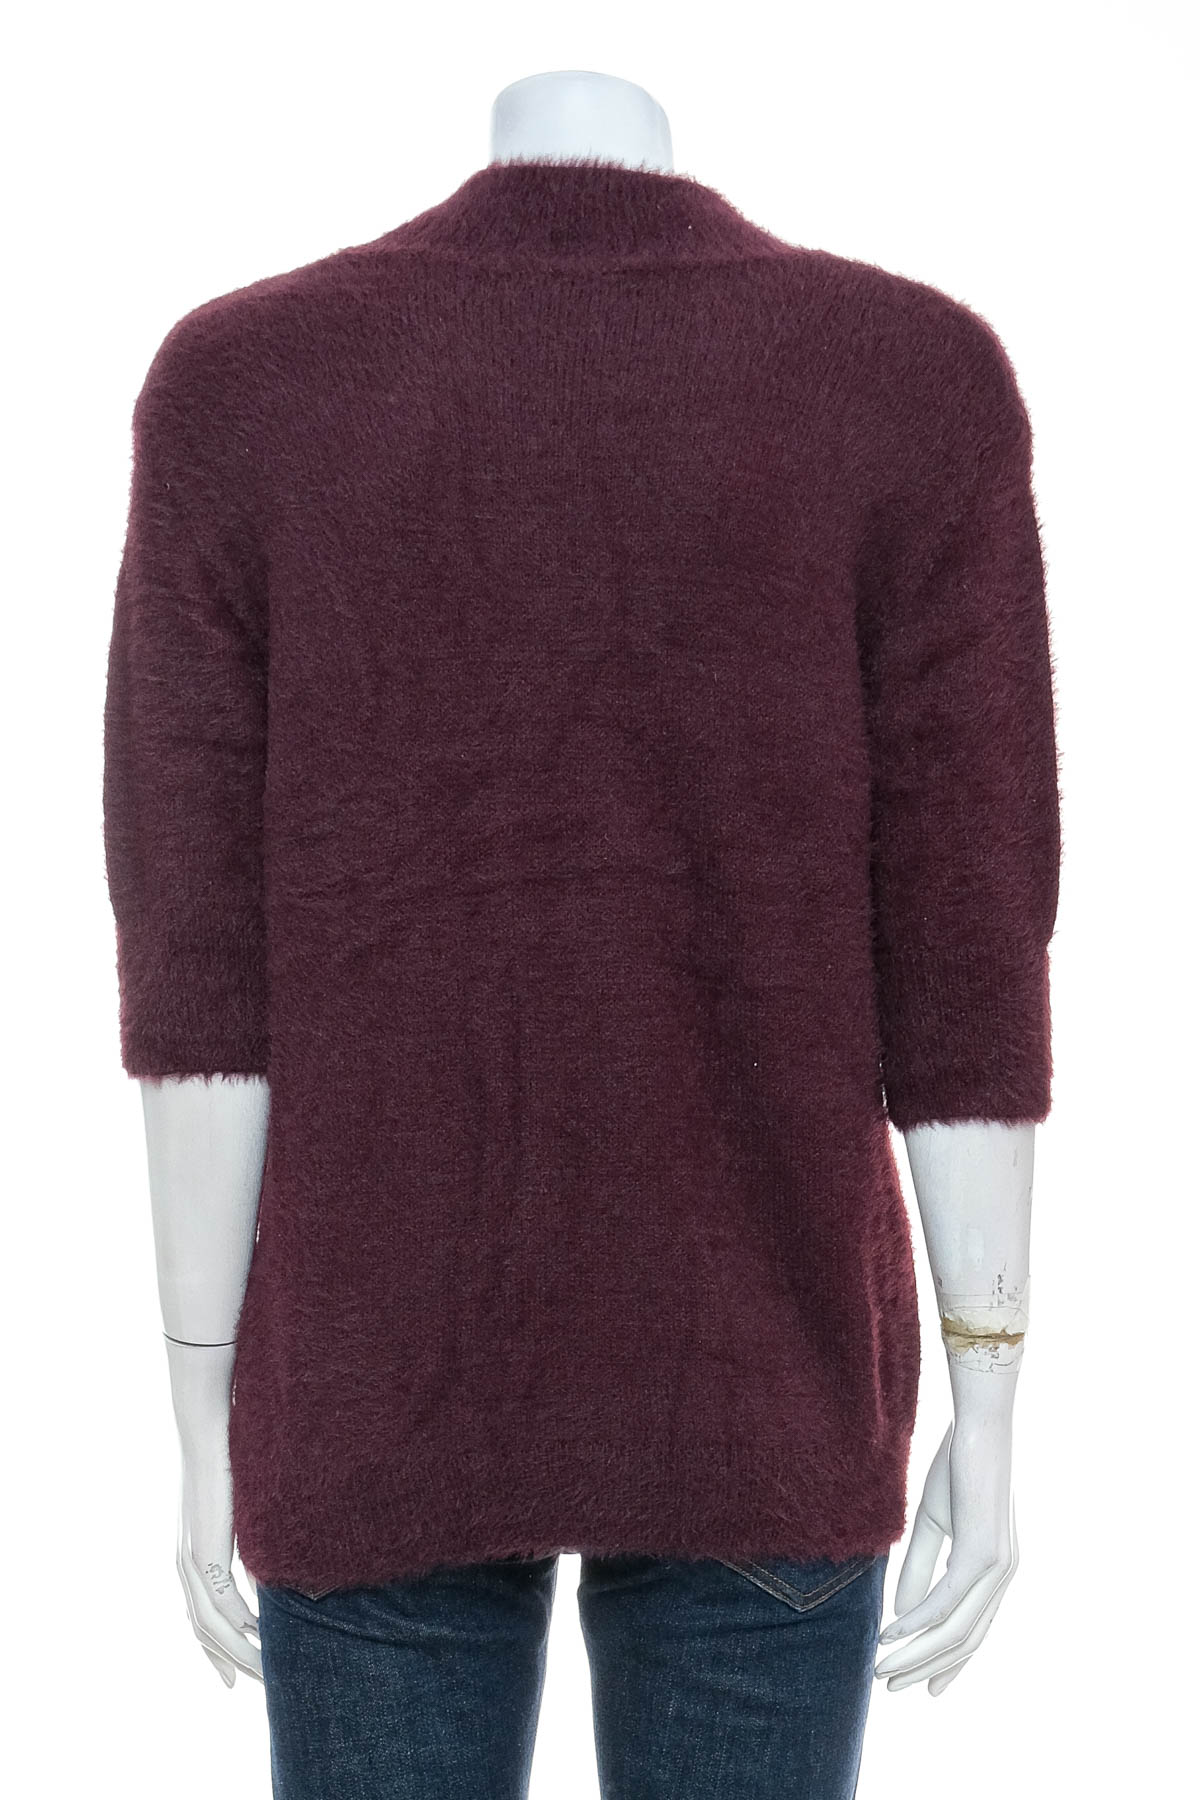 Γυναικείο πουλόβερ - Marled BY REUNITED CLOTHING - 1